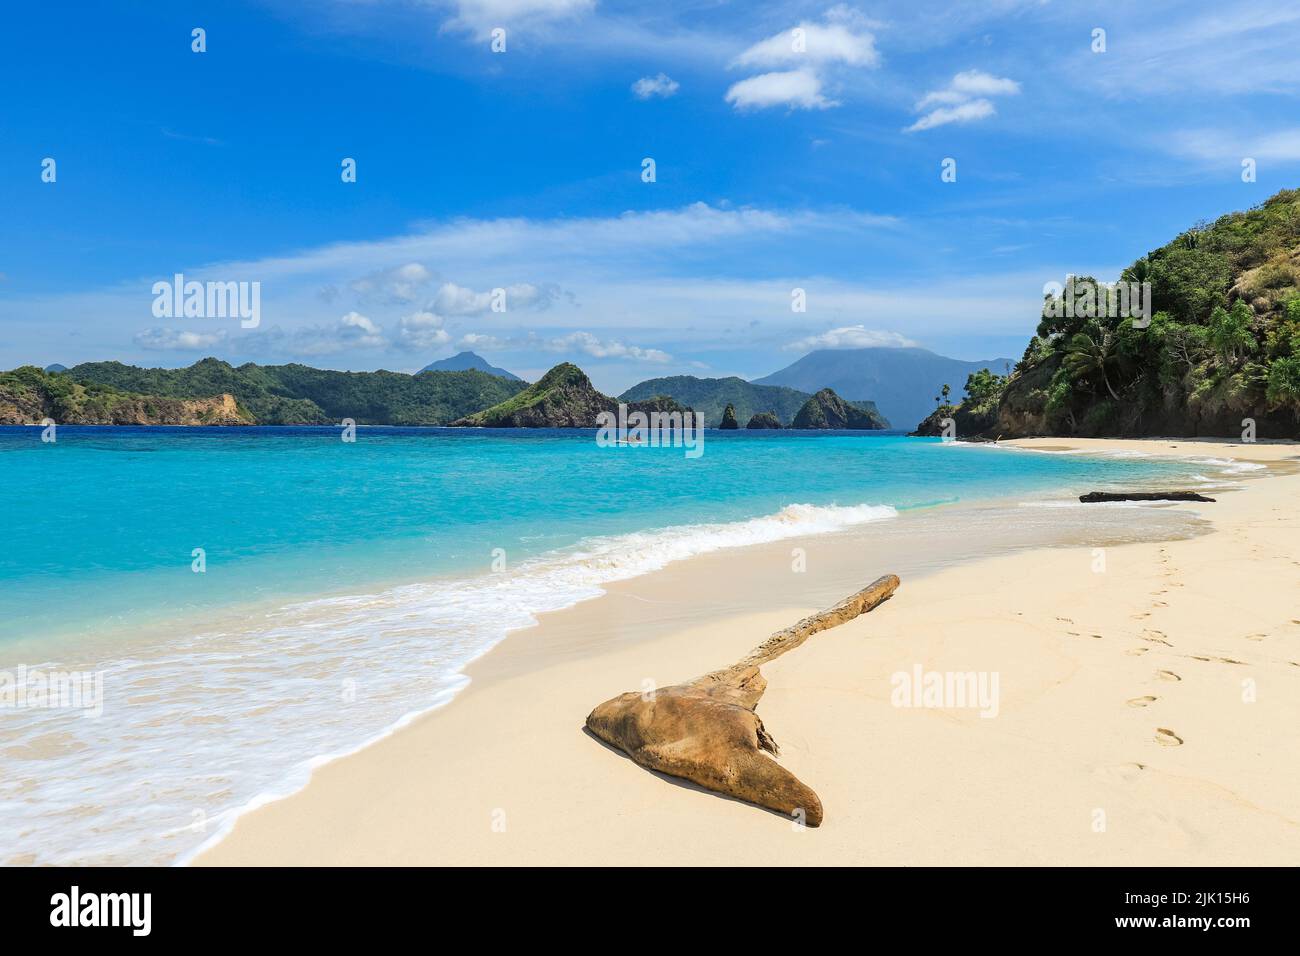 Weißer Sandstrand der Mahoro-Insel mit den Inseln Masare und Pahepa im Hintergrund, Mahoro, Siau, Sangihe-Archipel, Nord-Sulawesi, Indonesien Stockfoto